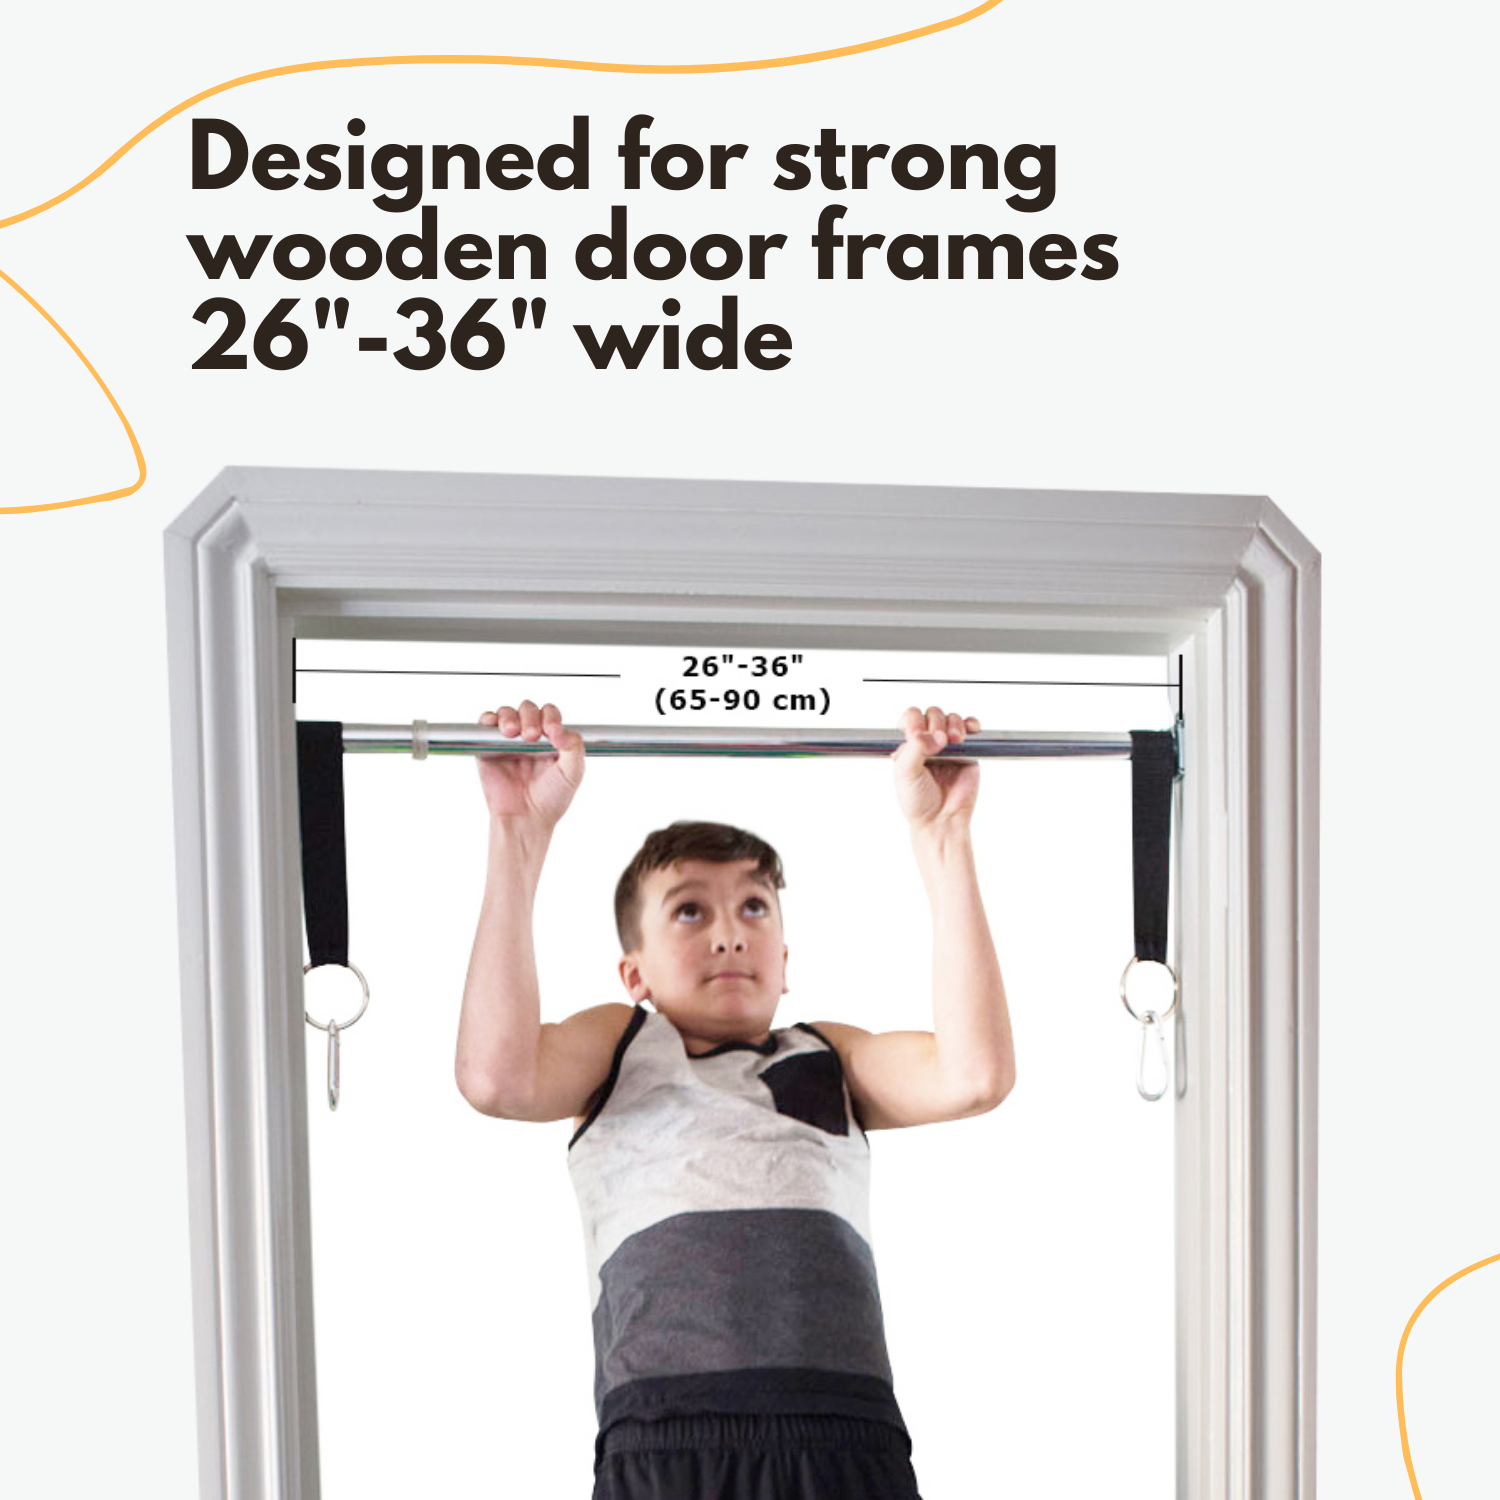 Dreamgym doorway swing bar is designed for strong wooden door frames 26"-36" wide